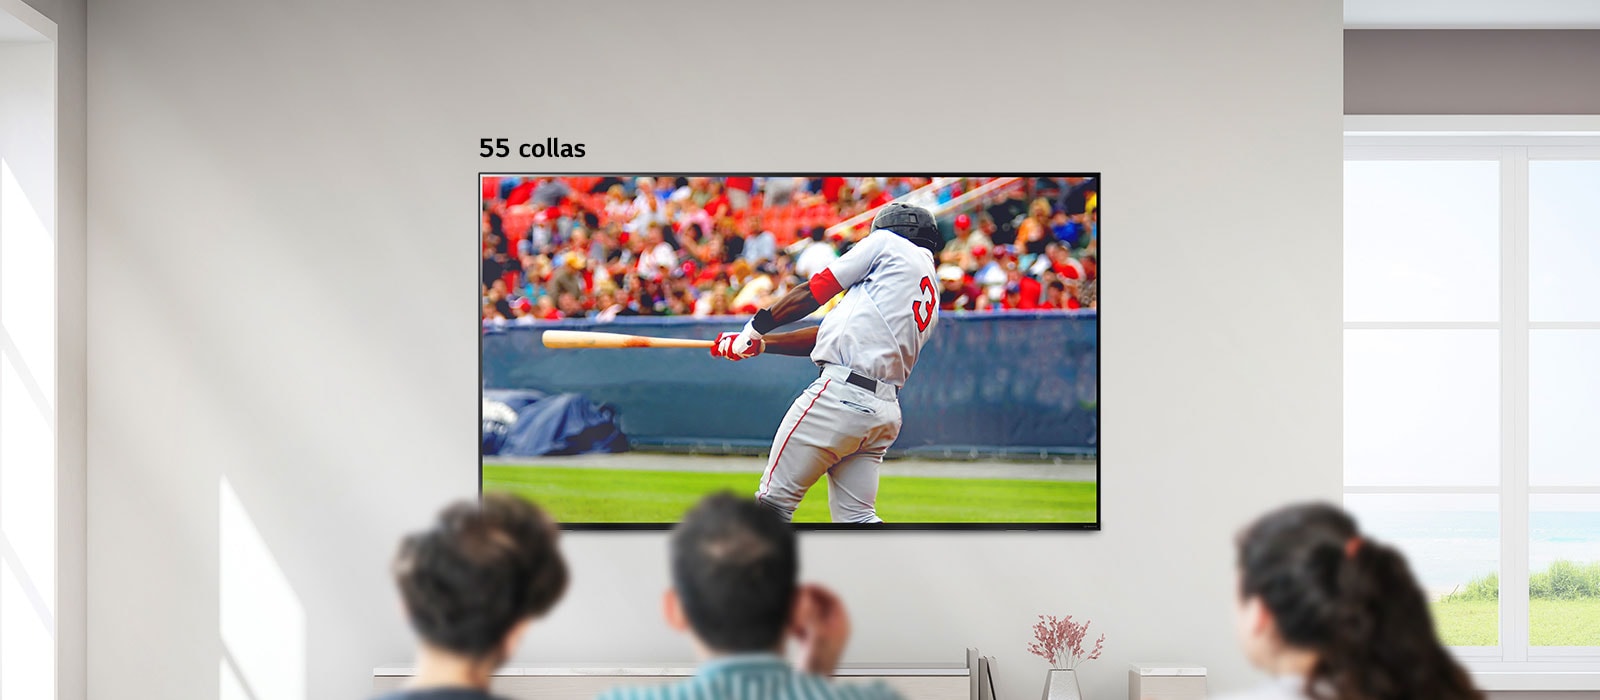 Ritināms attēls, kurā trīs personas skatās beisbola spēli uz liela, pie sienas piestiprināta televizora. Ritinot no kreisās uz labo pusi, ekrāns kļūst lielāks.